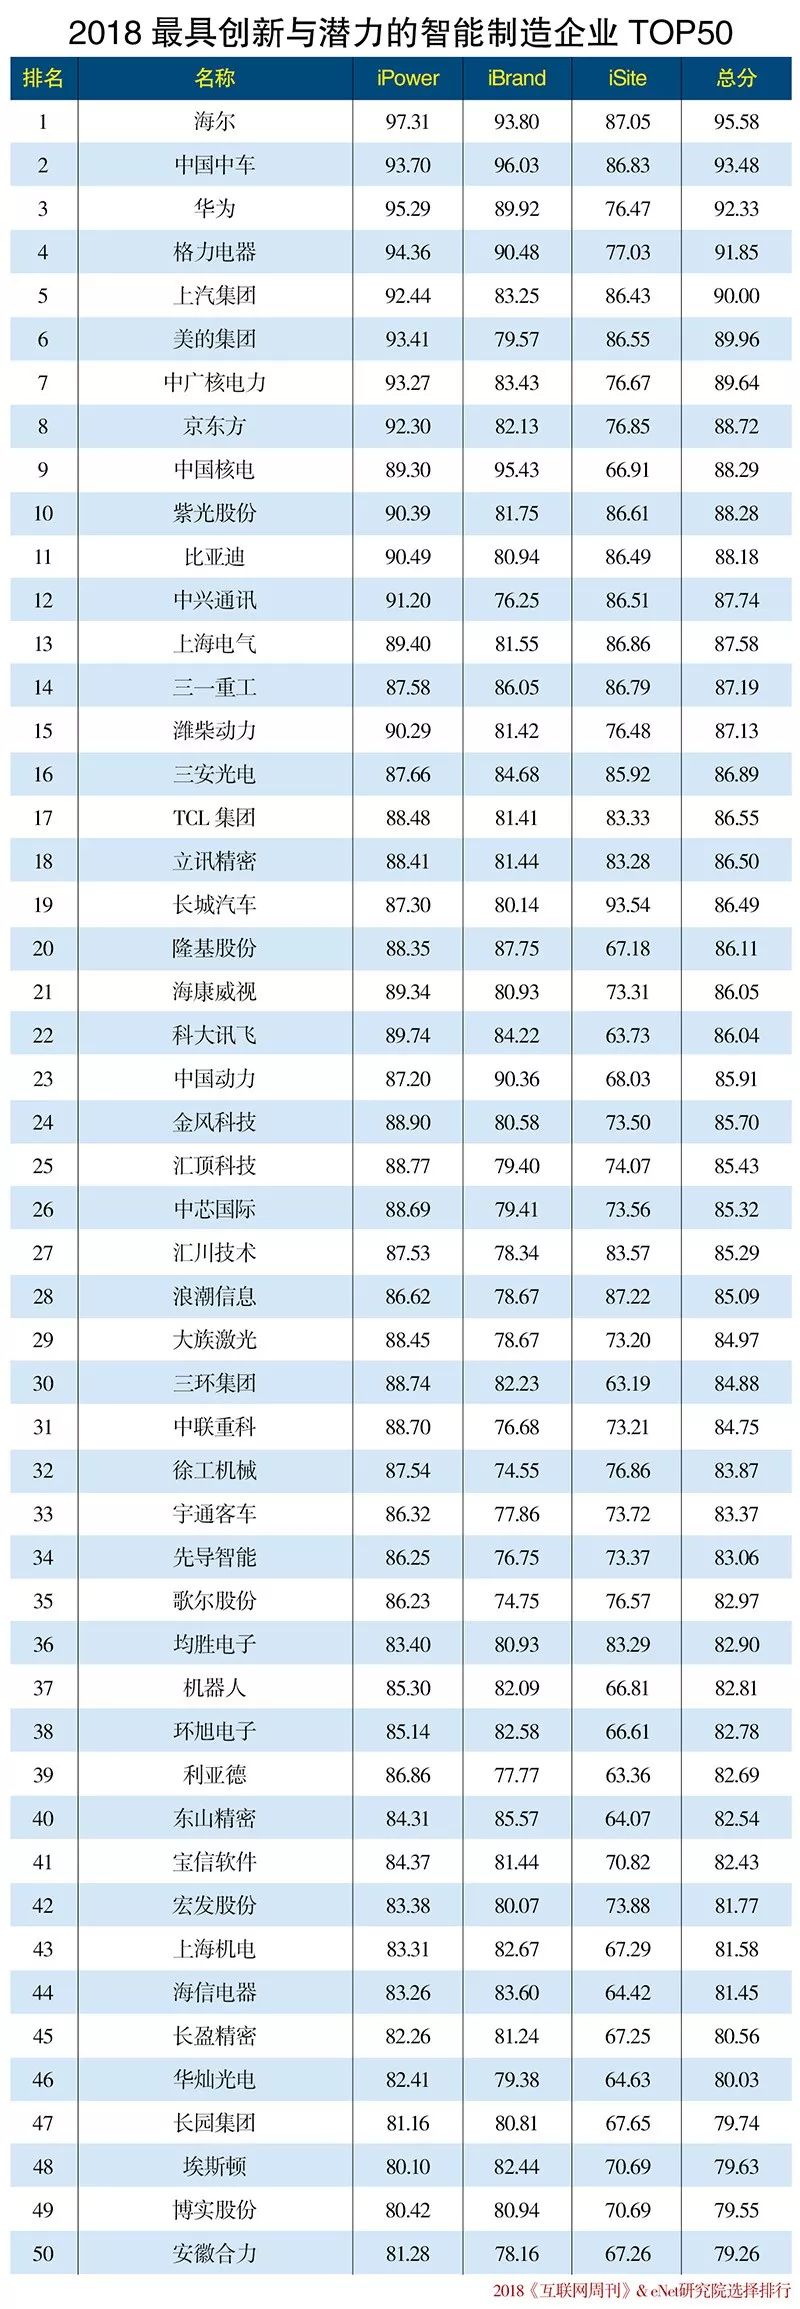 2018年中国最具创新与潜力的智能制造企业TOP50排行榜